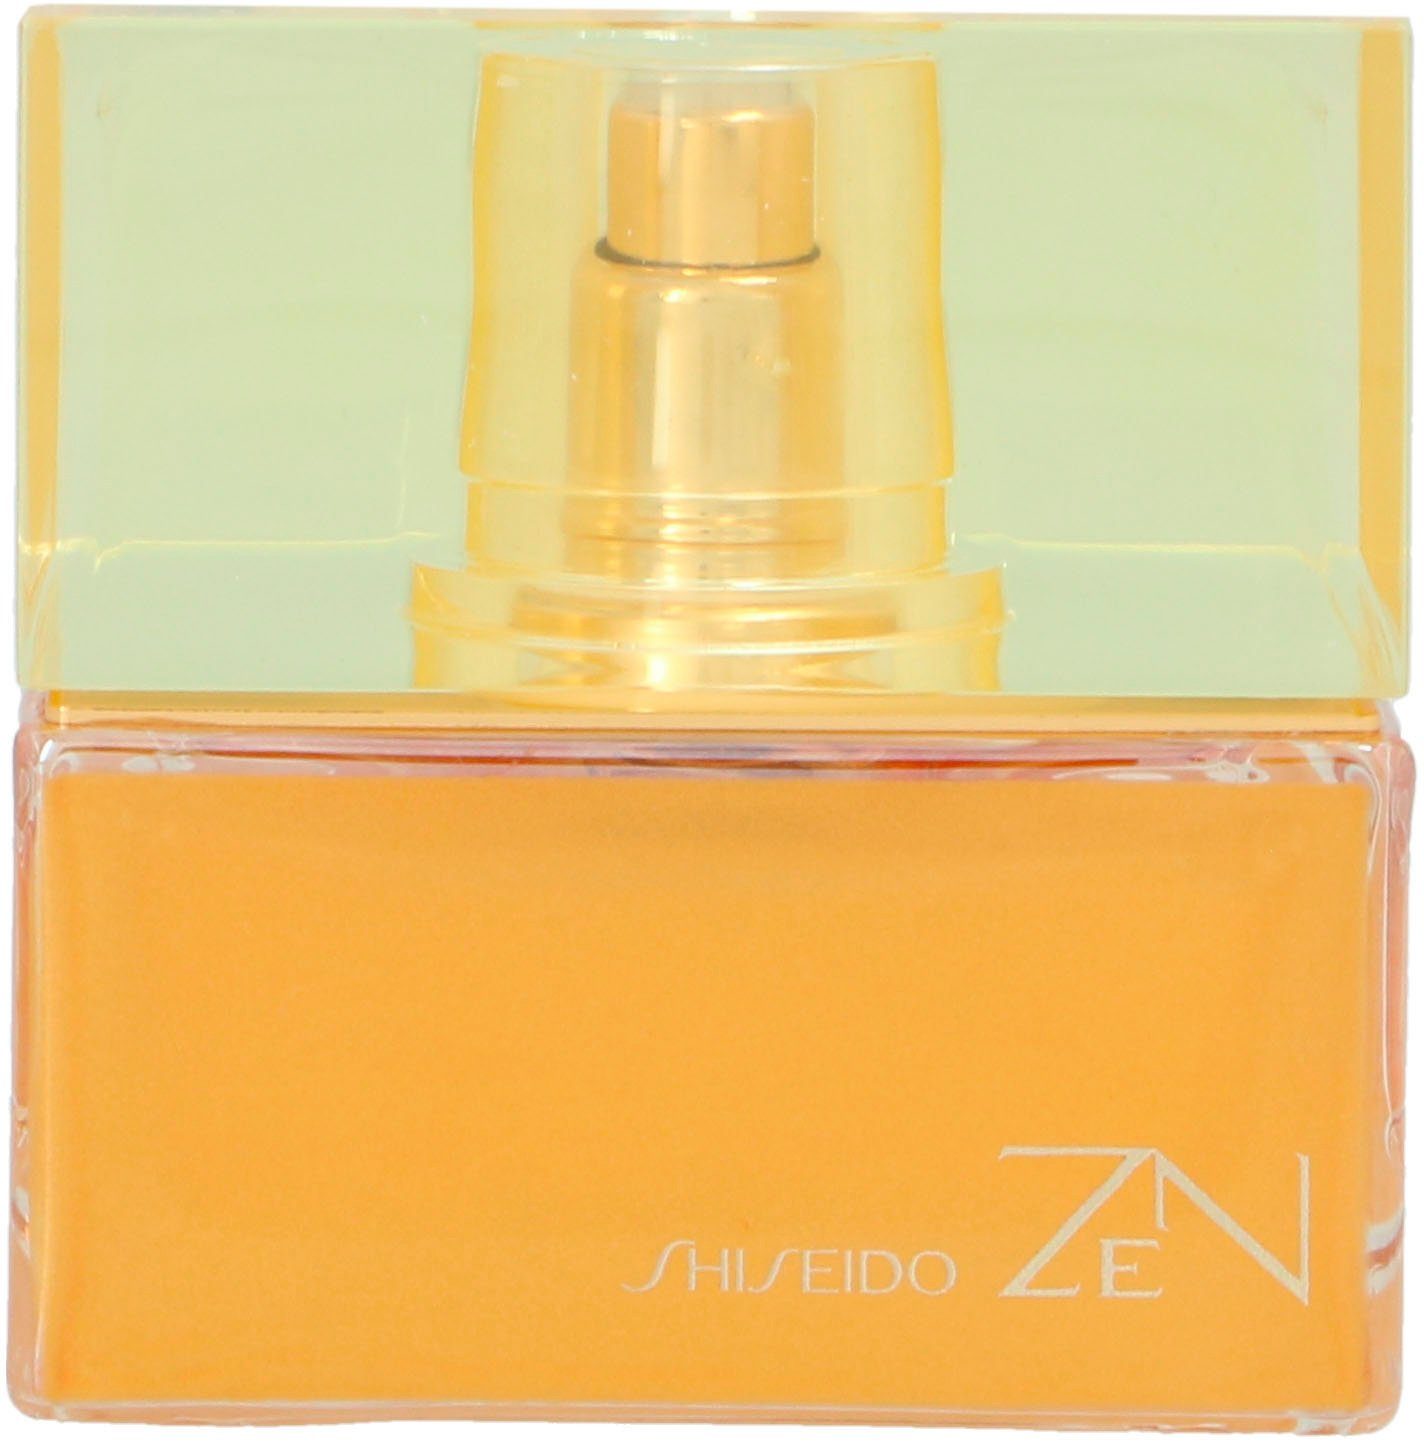 Eau Women For SHISEIDO de Parfum Zen